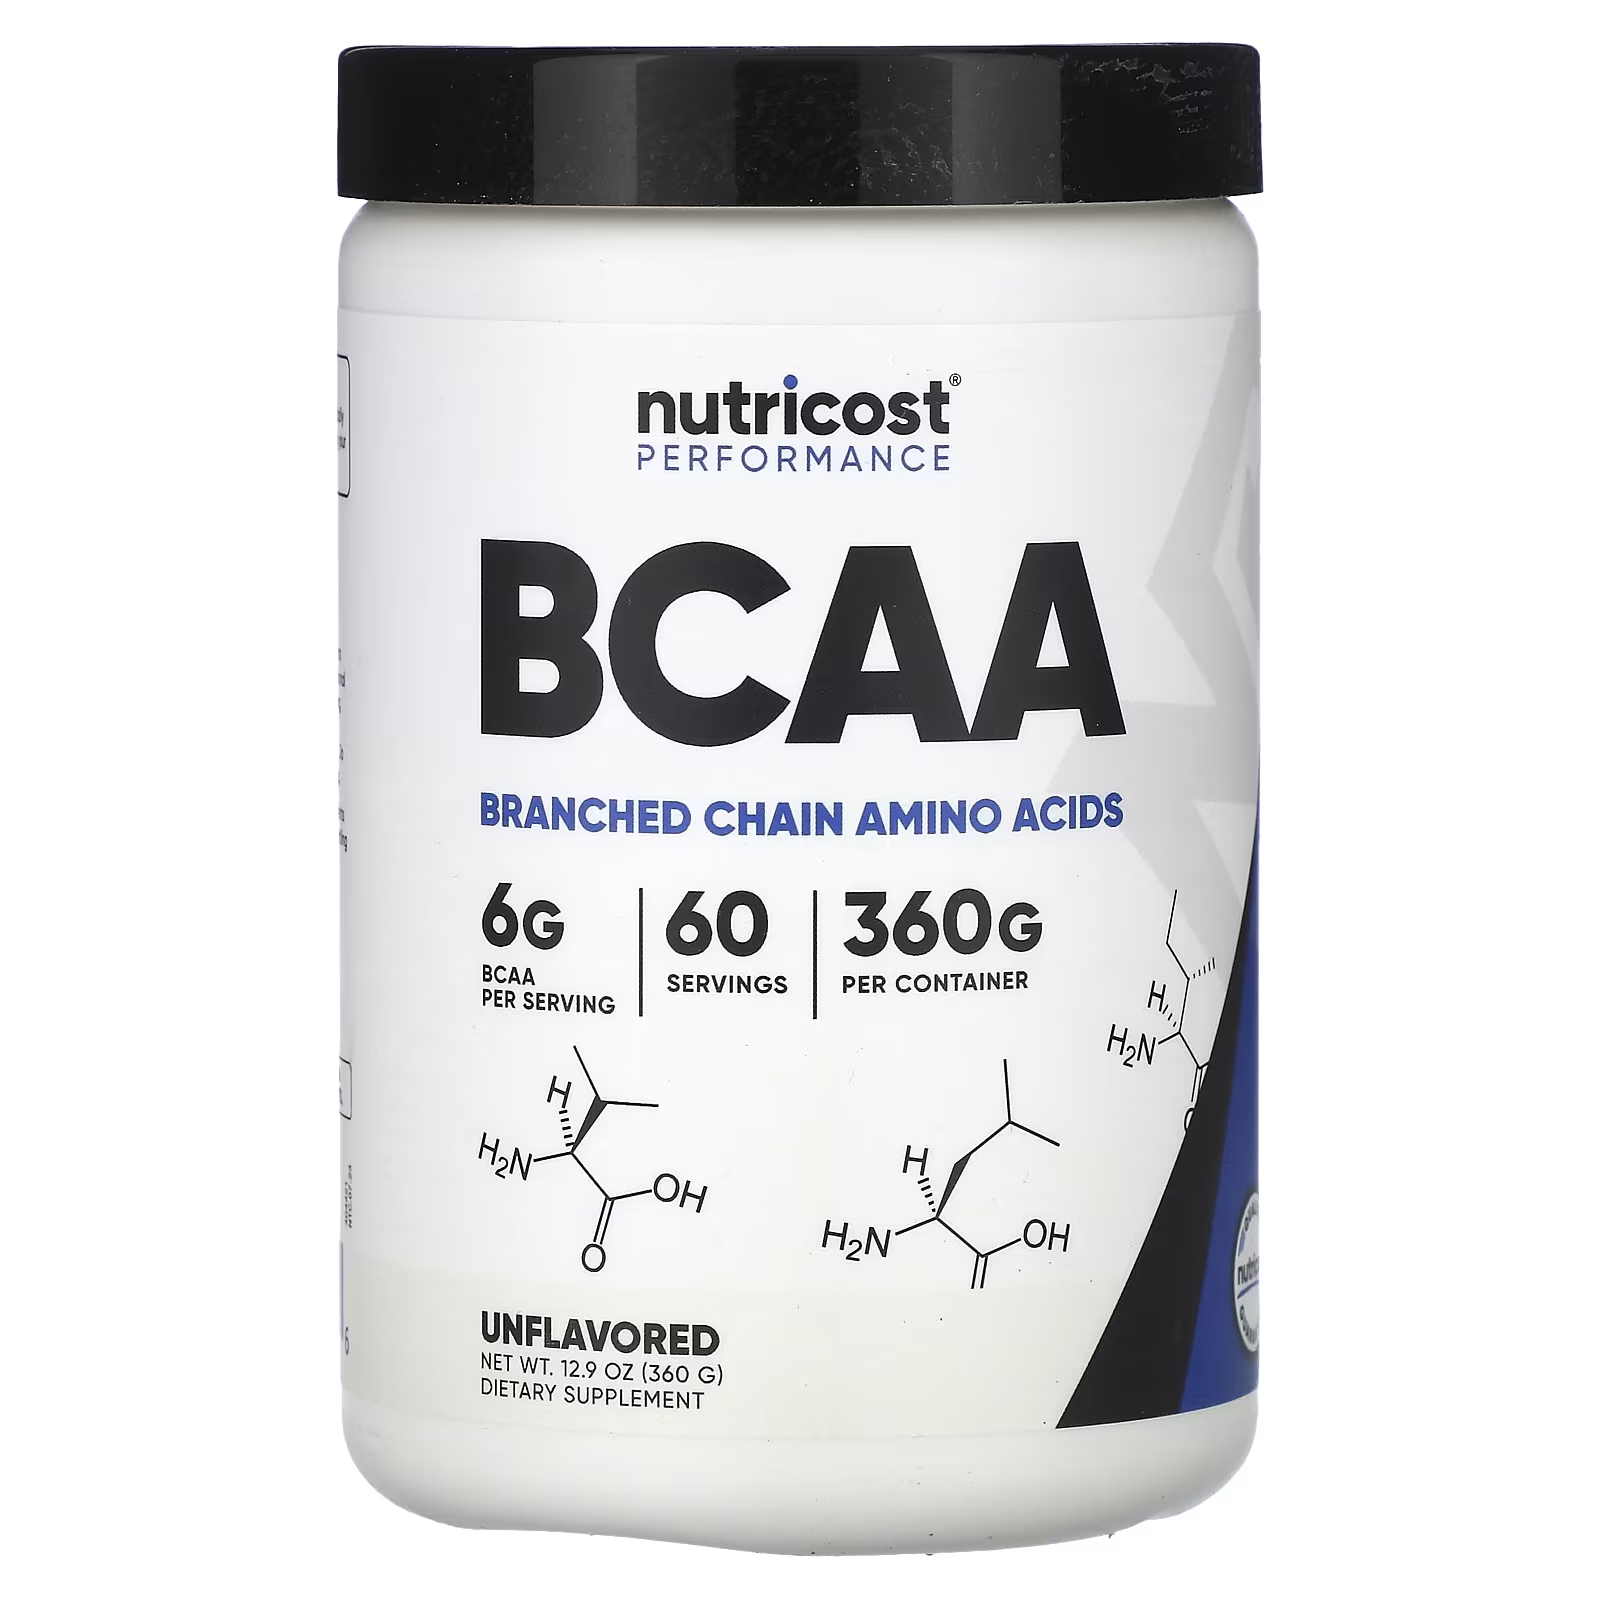 Пищевая добавка Nutricost Performance BCAA, 360 г dymatize nutrition athlete s bcaa аминокислоты с разветвленной цепью для физической активности фруктовый пунш 300 г 10 58 унций